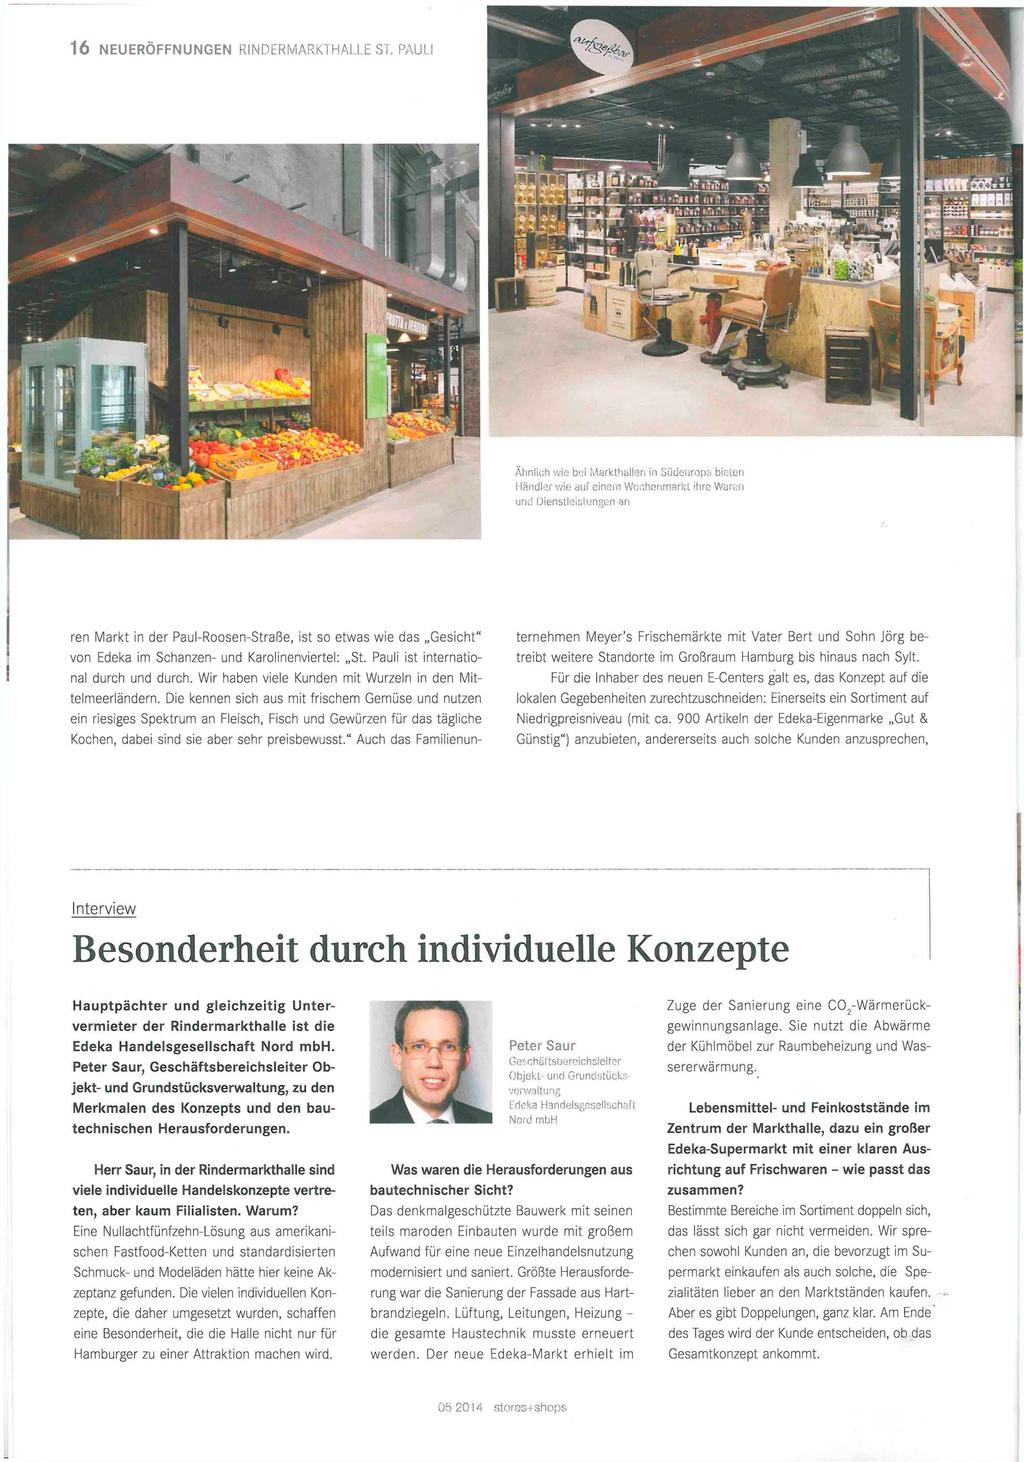 ren Markt in der Paul-Roosen-Straße, ist so etwas wie das Gesicht" von Edeka im Schanzen- und Karolinenviertel: St. Pauli ist international durch und durch.